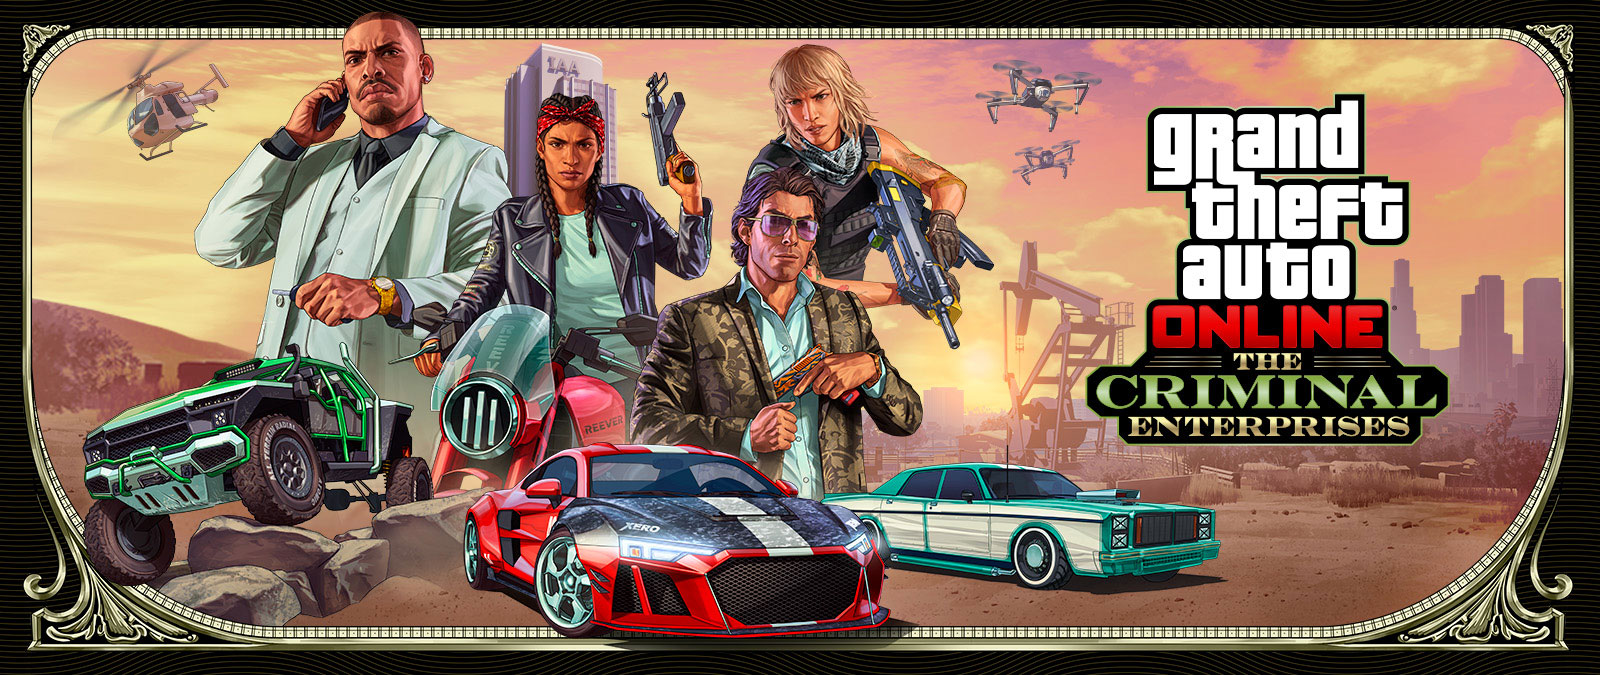 Grand Theft Auto Online: The Criminal Enterprises, tres vehículos elegantes circulan por el plano principal mientras cuatro personajes posan en la parte superior.